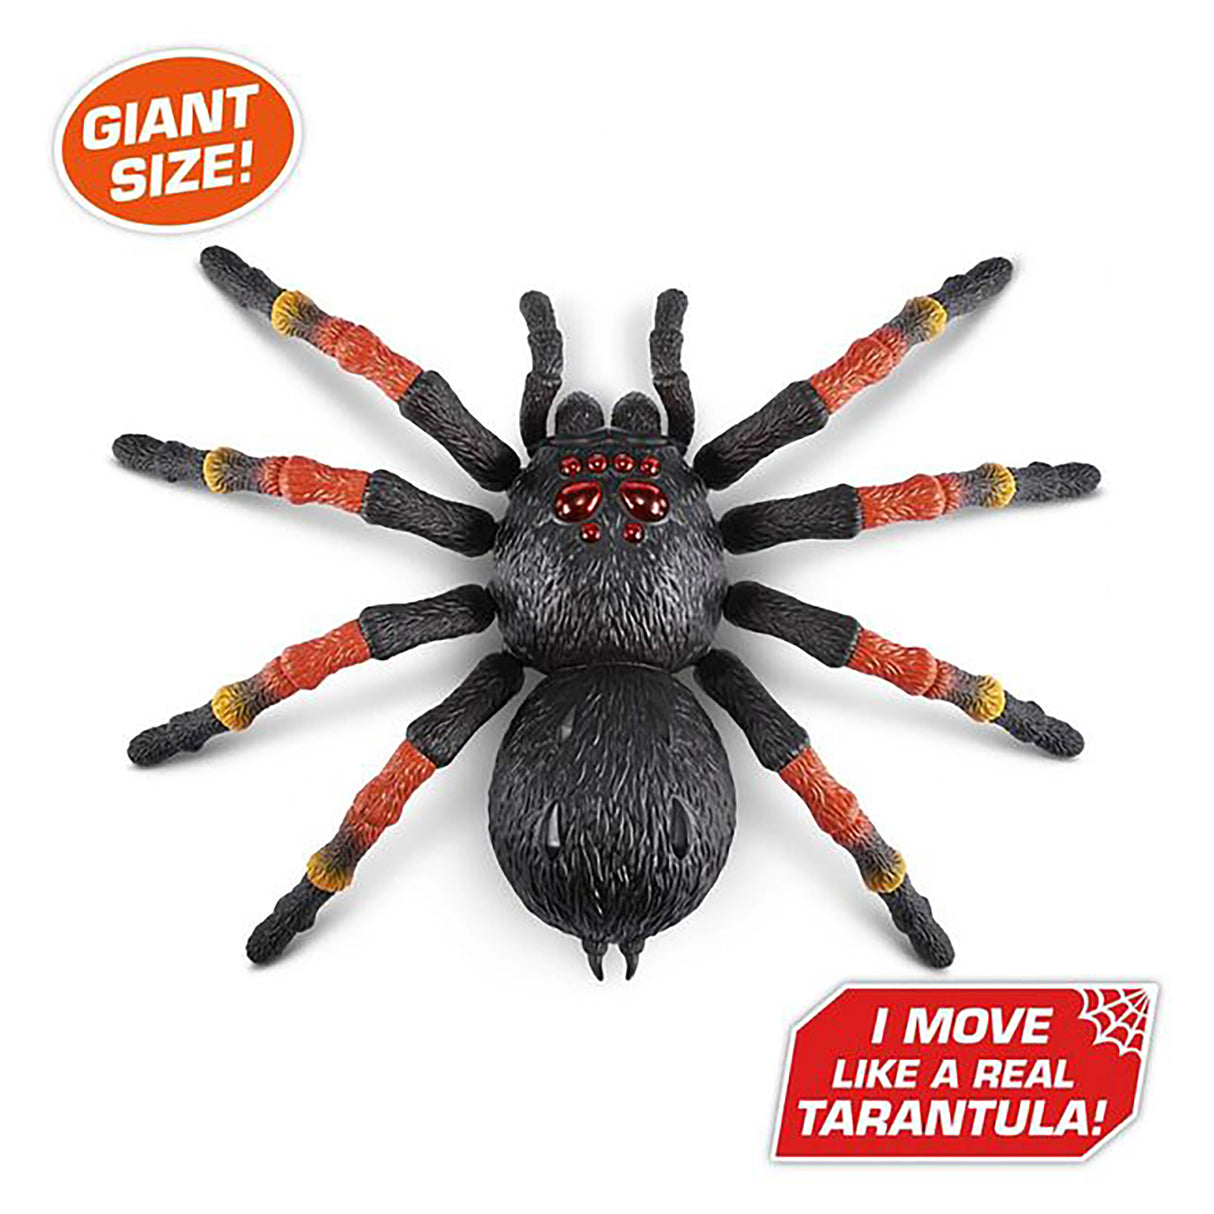 Robo Alive Giant Spider